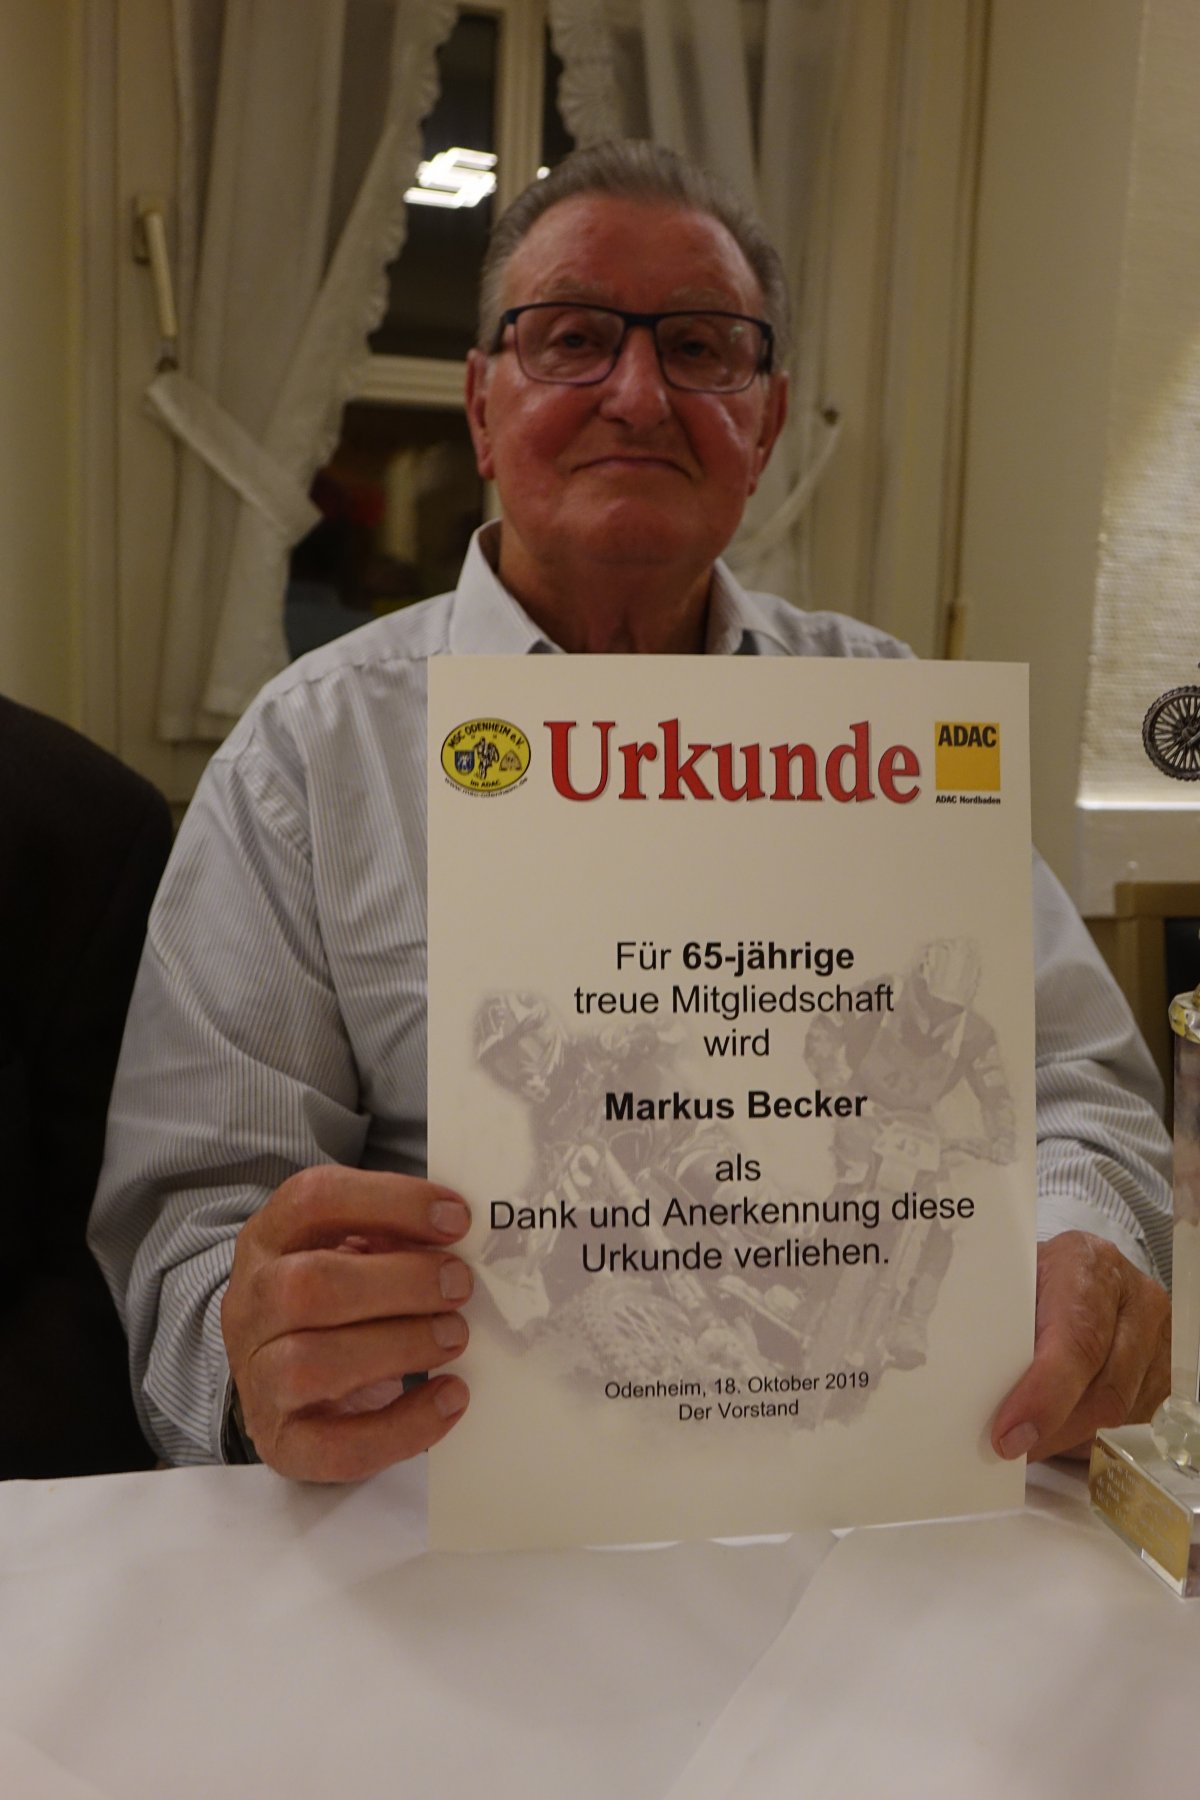 Markus Becker ist eines von drei noch lebenden Gründungsmitgliedern des MSC Odenheim. Im Rahmen eines Ehrungsabends bekam er am Freitag eine Urkunde nebst Pokal und Präsent überreicht.